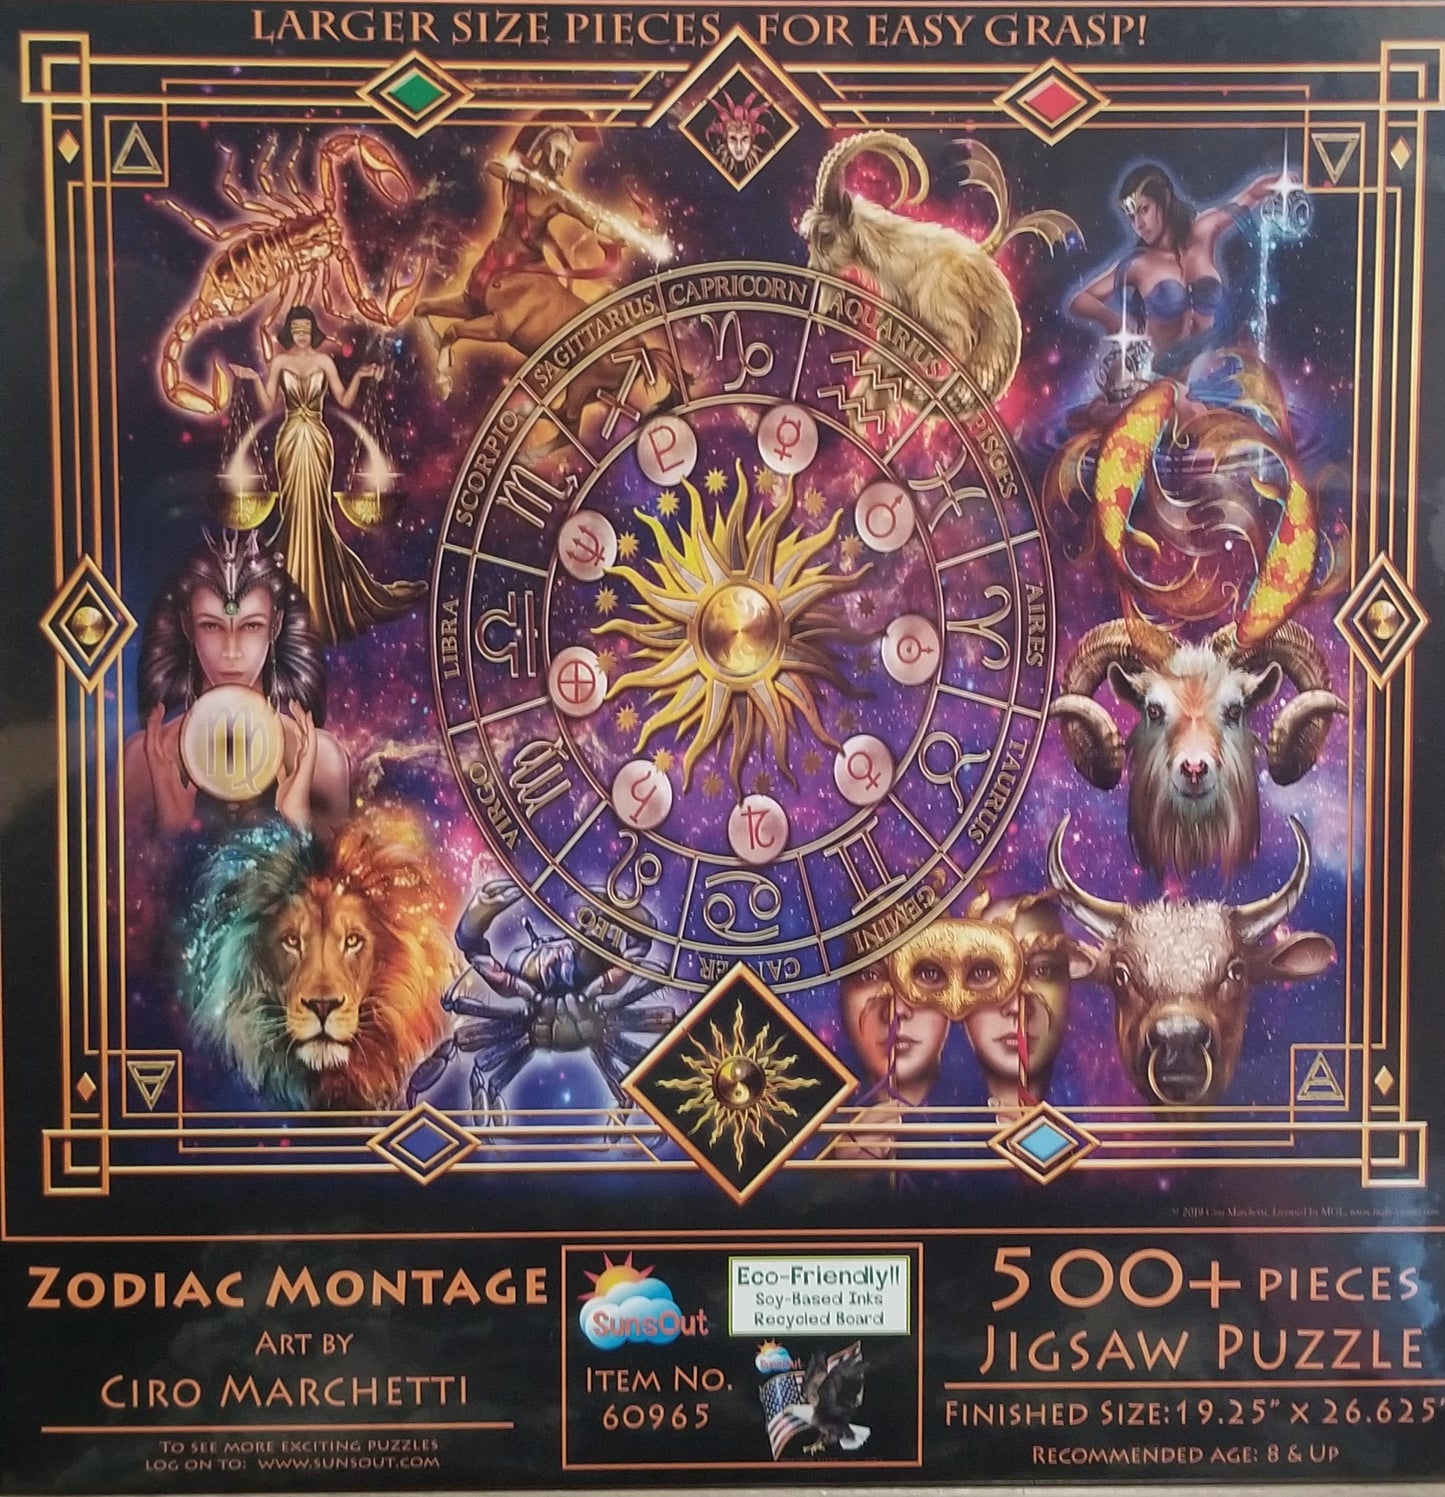 Zodiac Montage by Ciro Marchetti, 500 Piece Puzzle